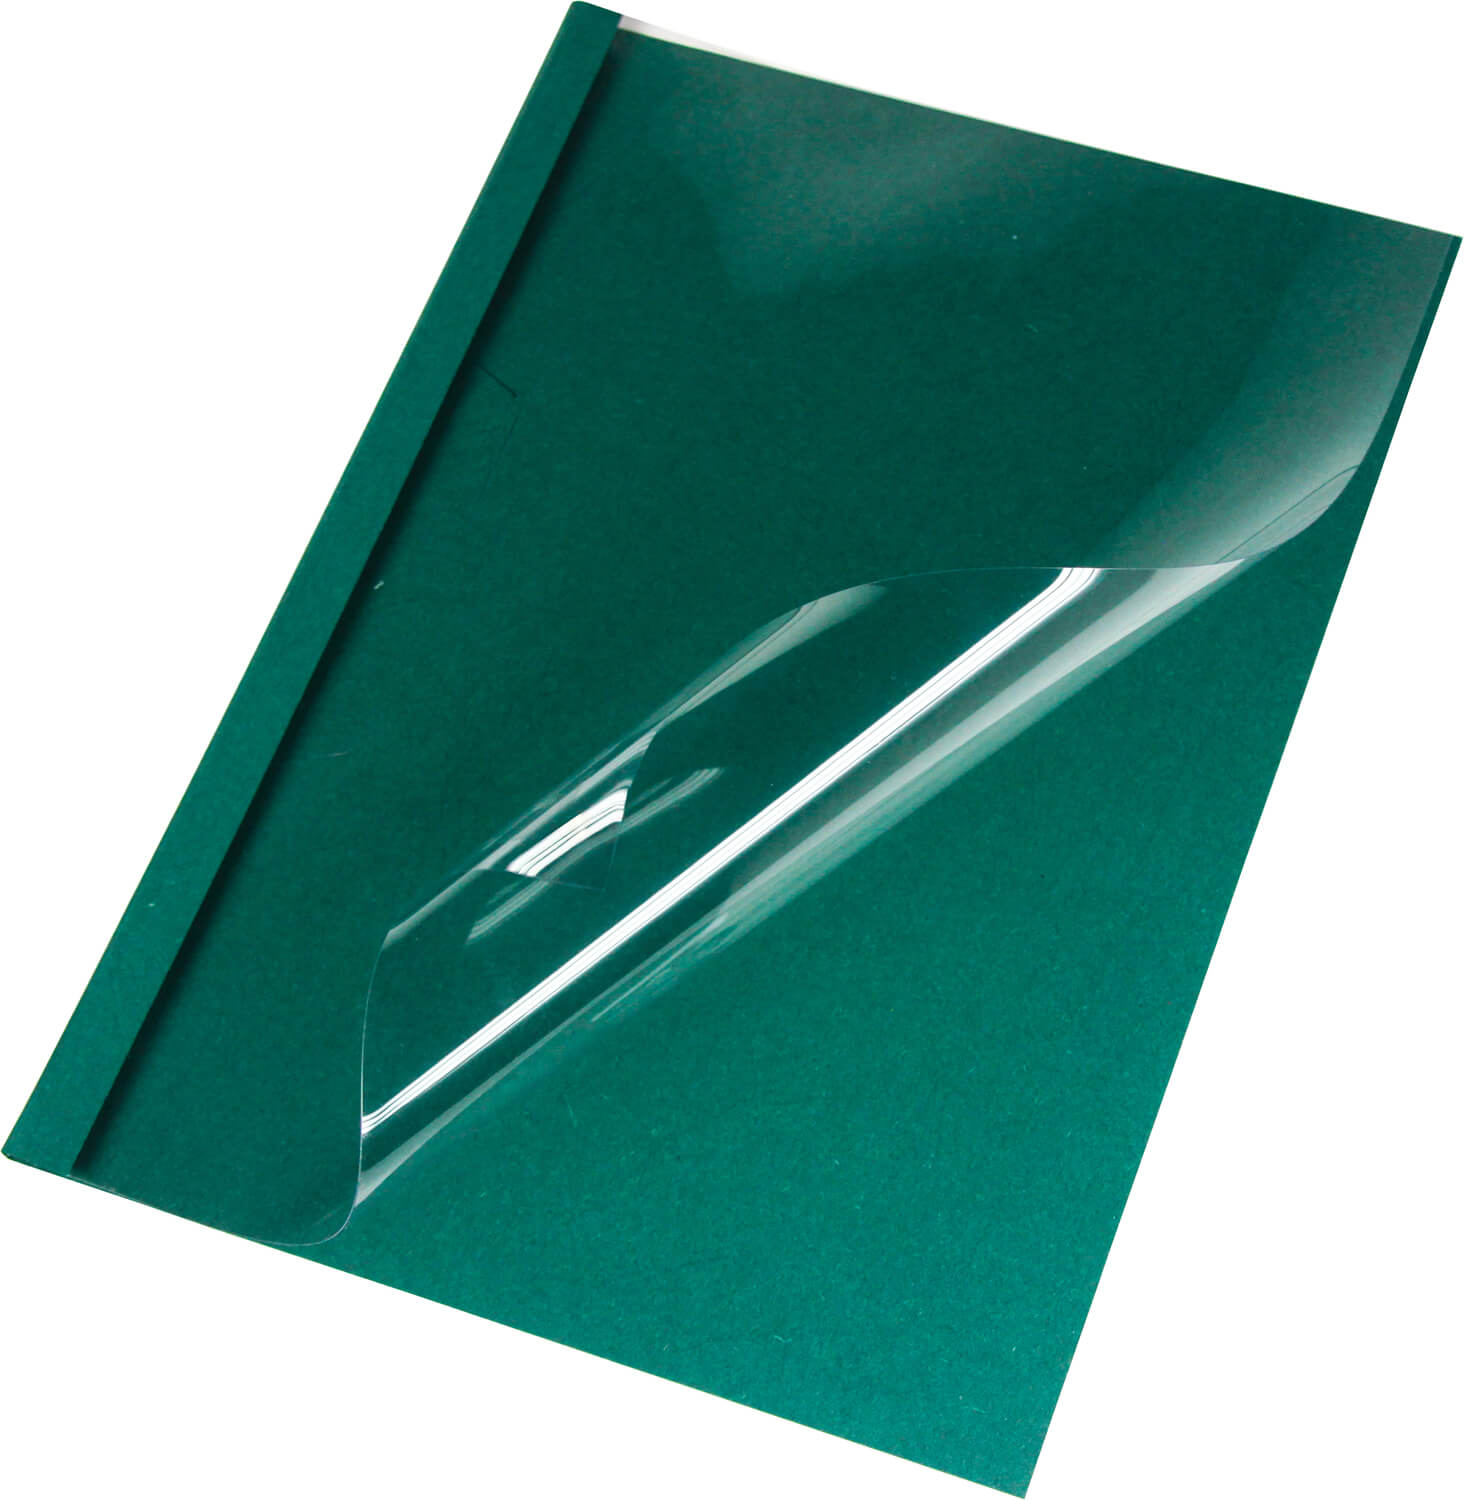 Thermobindemappen Leinen A4, grün 3 mm, matte Vorderseite | Bestnr. LMG-BMDLEM-GR-R3